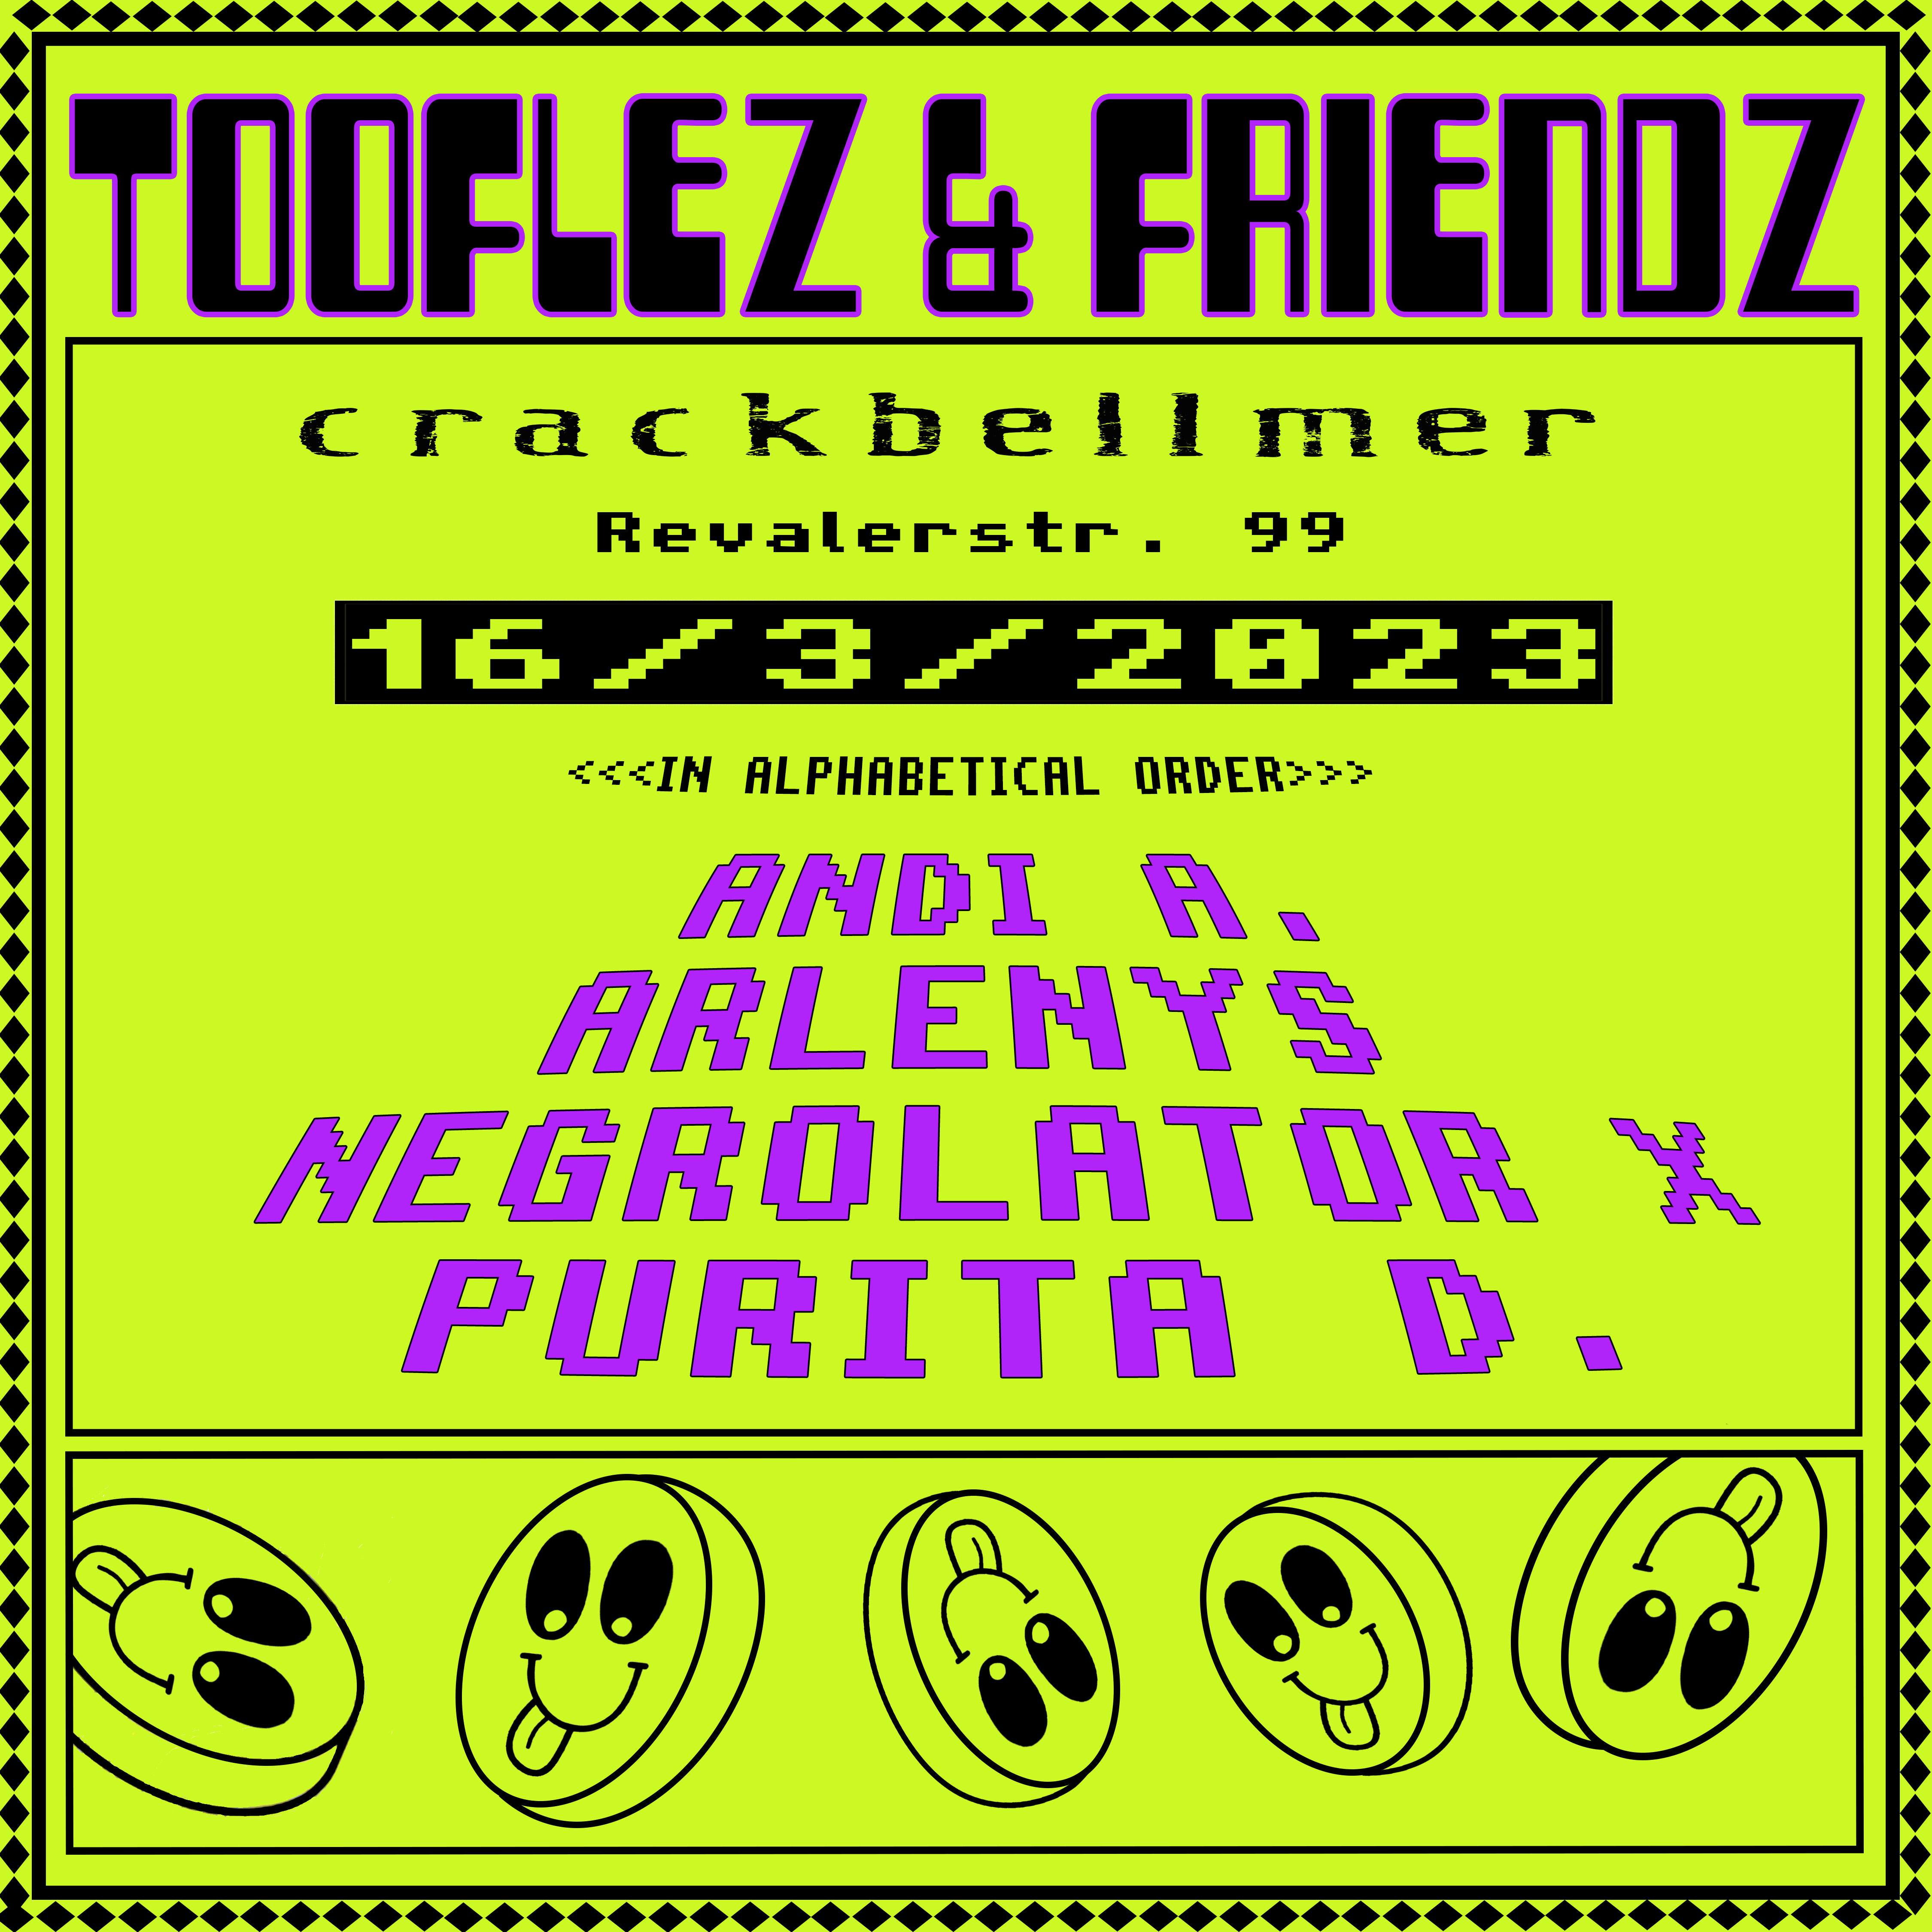 Tooflez & Friendz w/ Arlenys, ANDI A., Negrolator x, Purita D - Página frontal